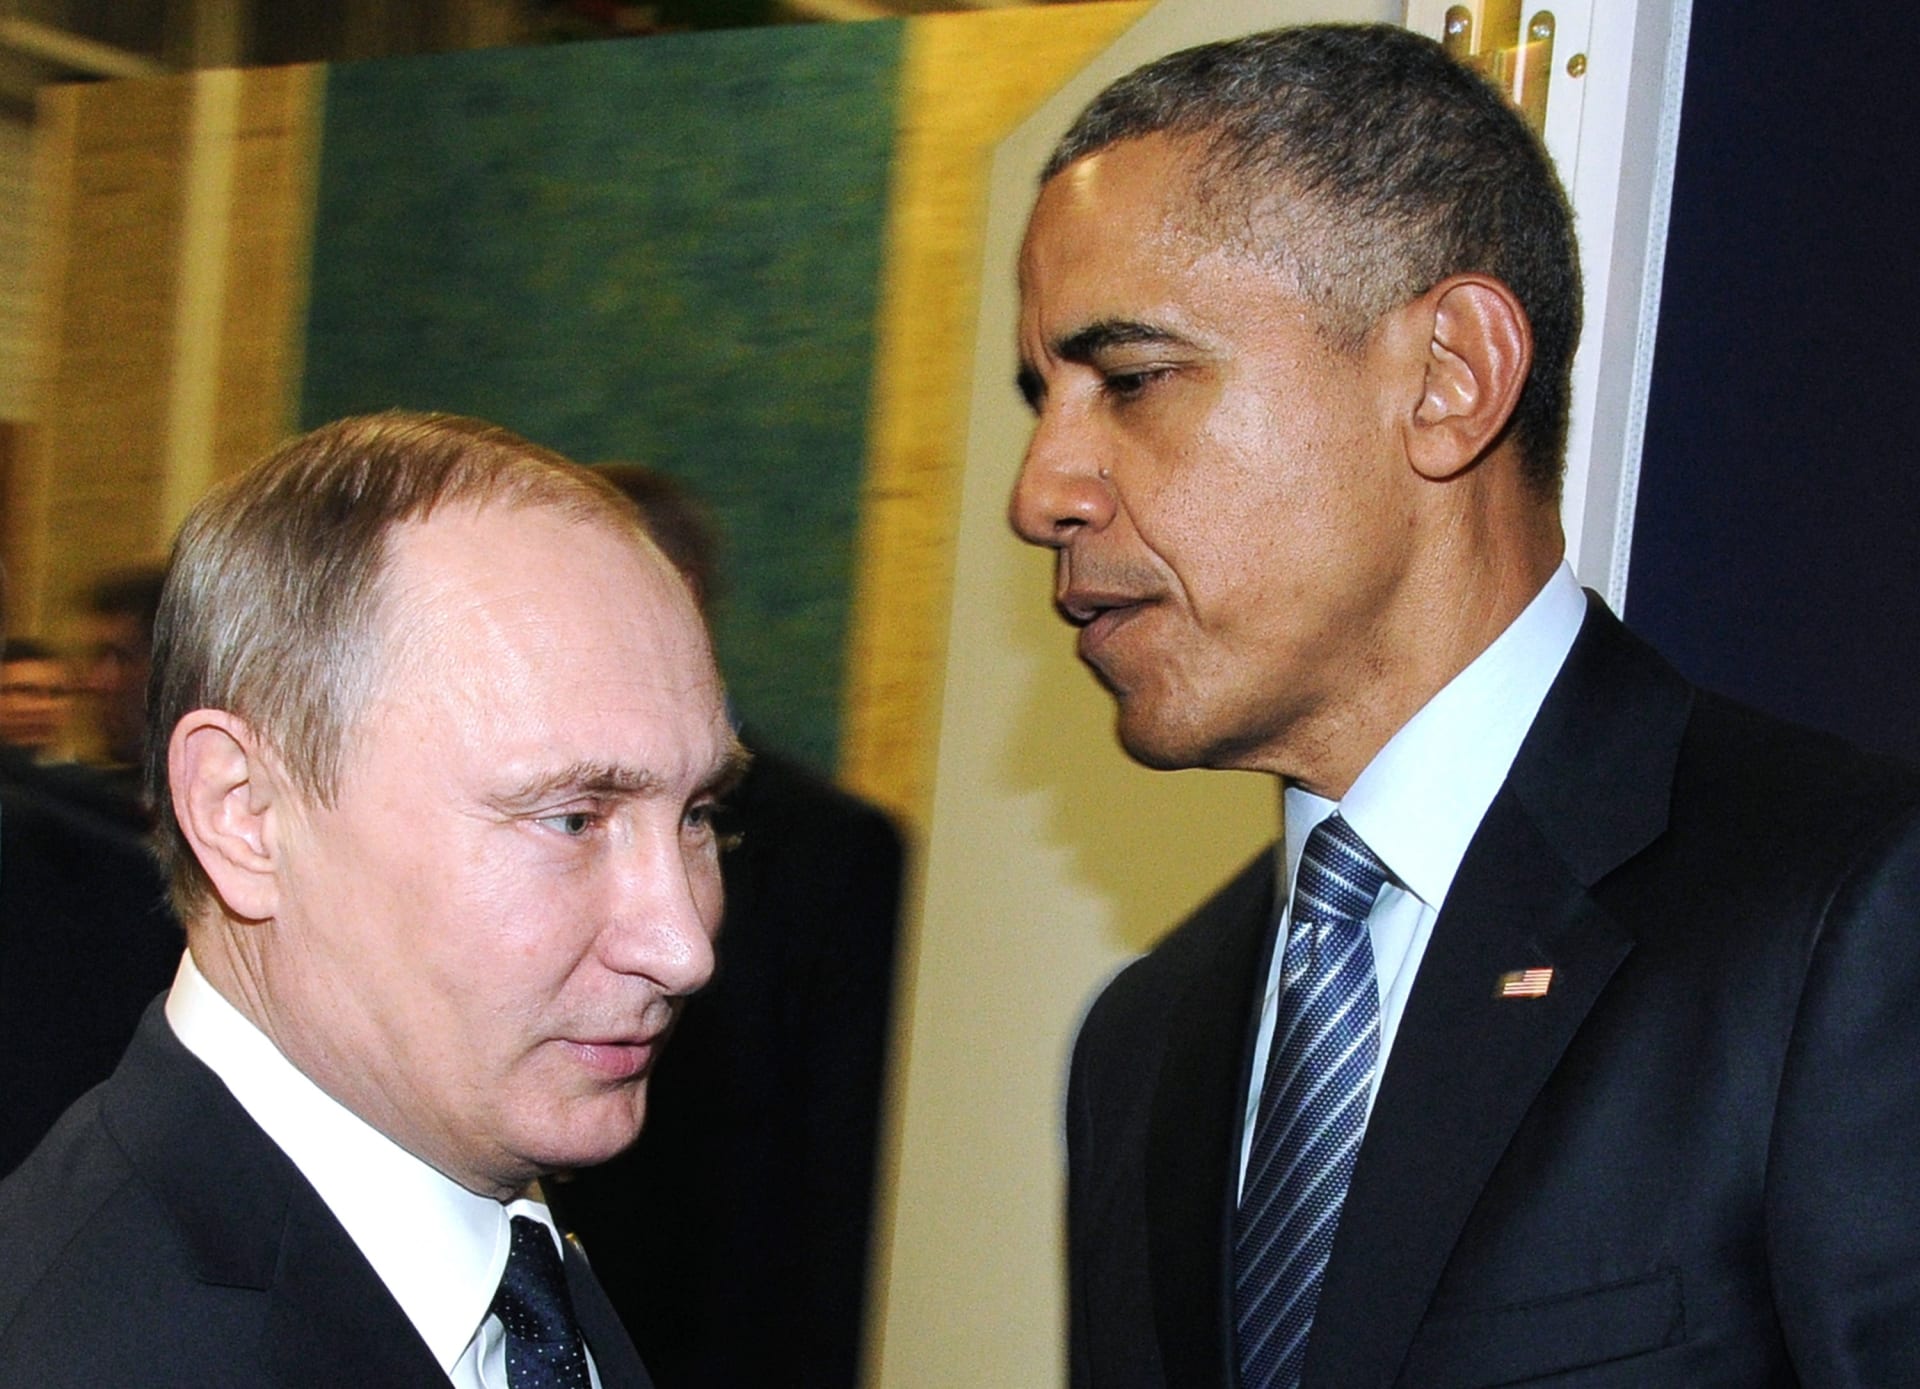 أوباما يناشد بوتين وقف استهداف المعارضة السورية.. والكرملين يؤكد تنشيط التعاون مع أمريكا لمحاربة "داعش"